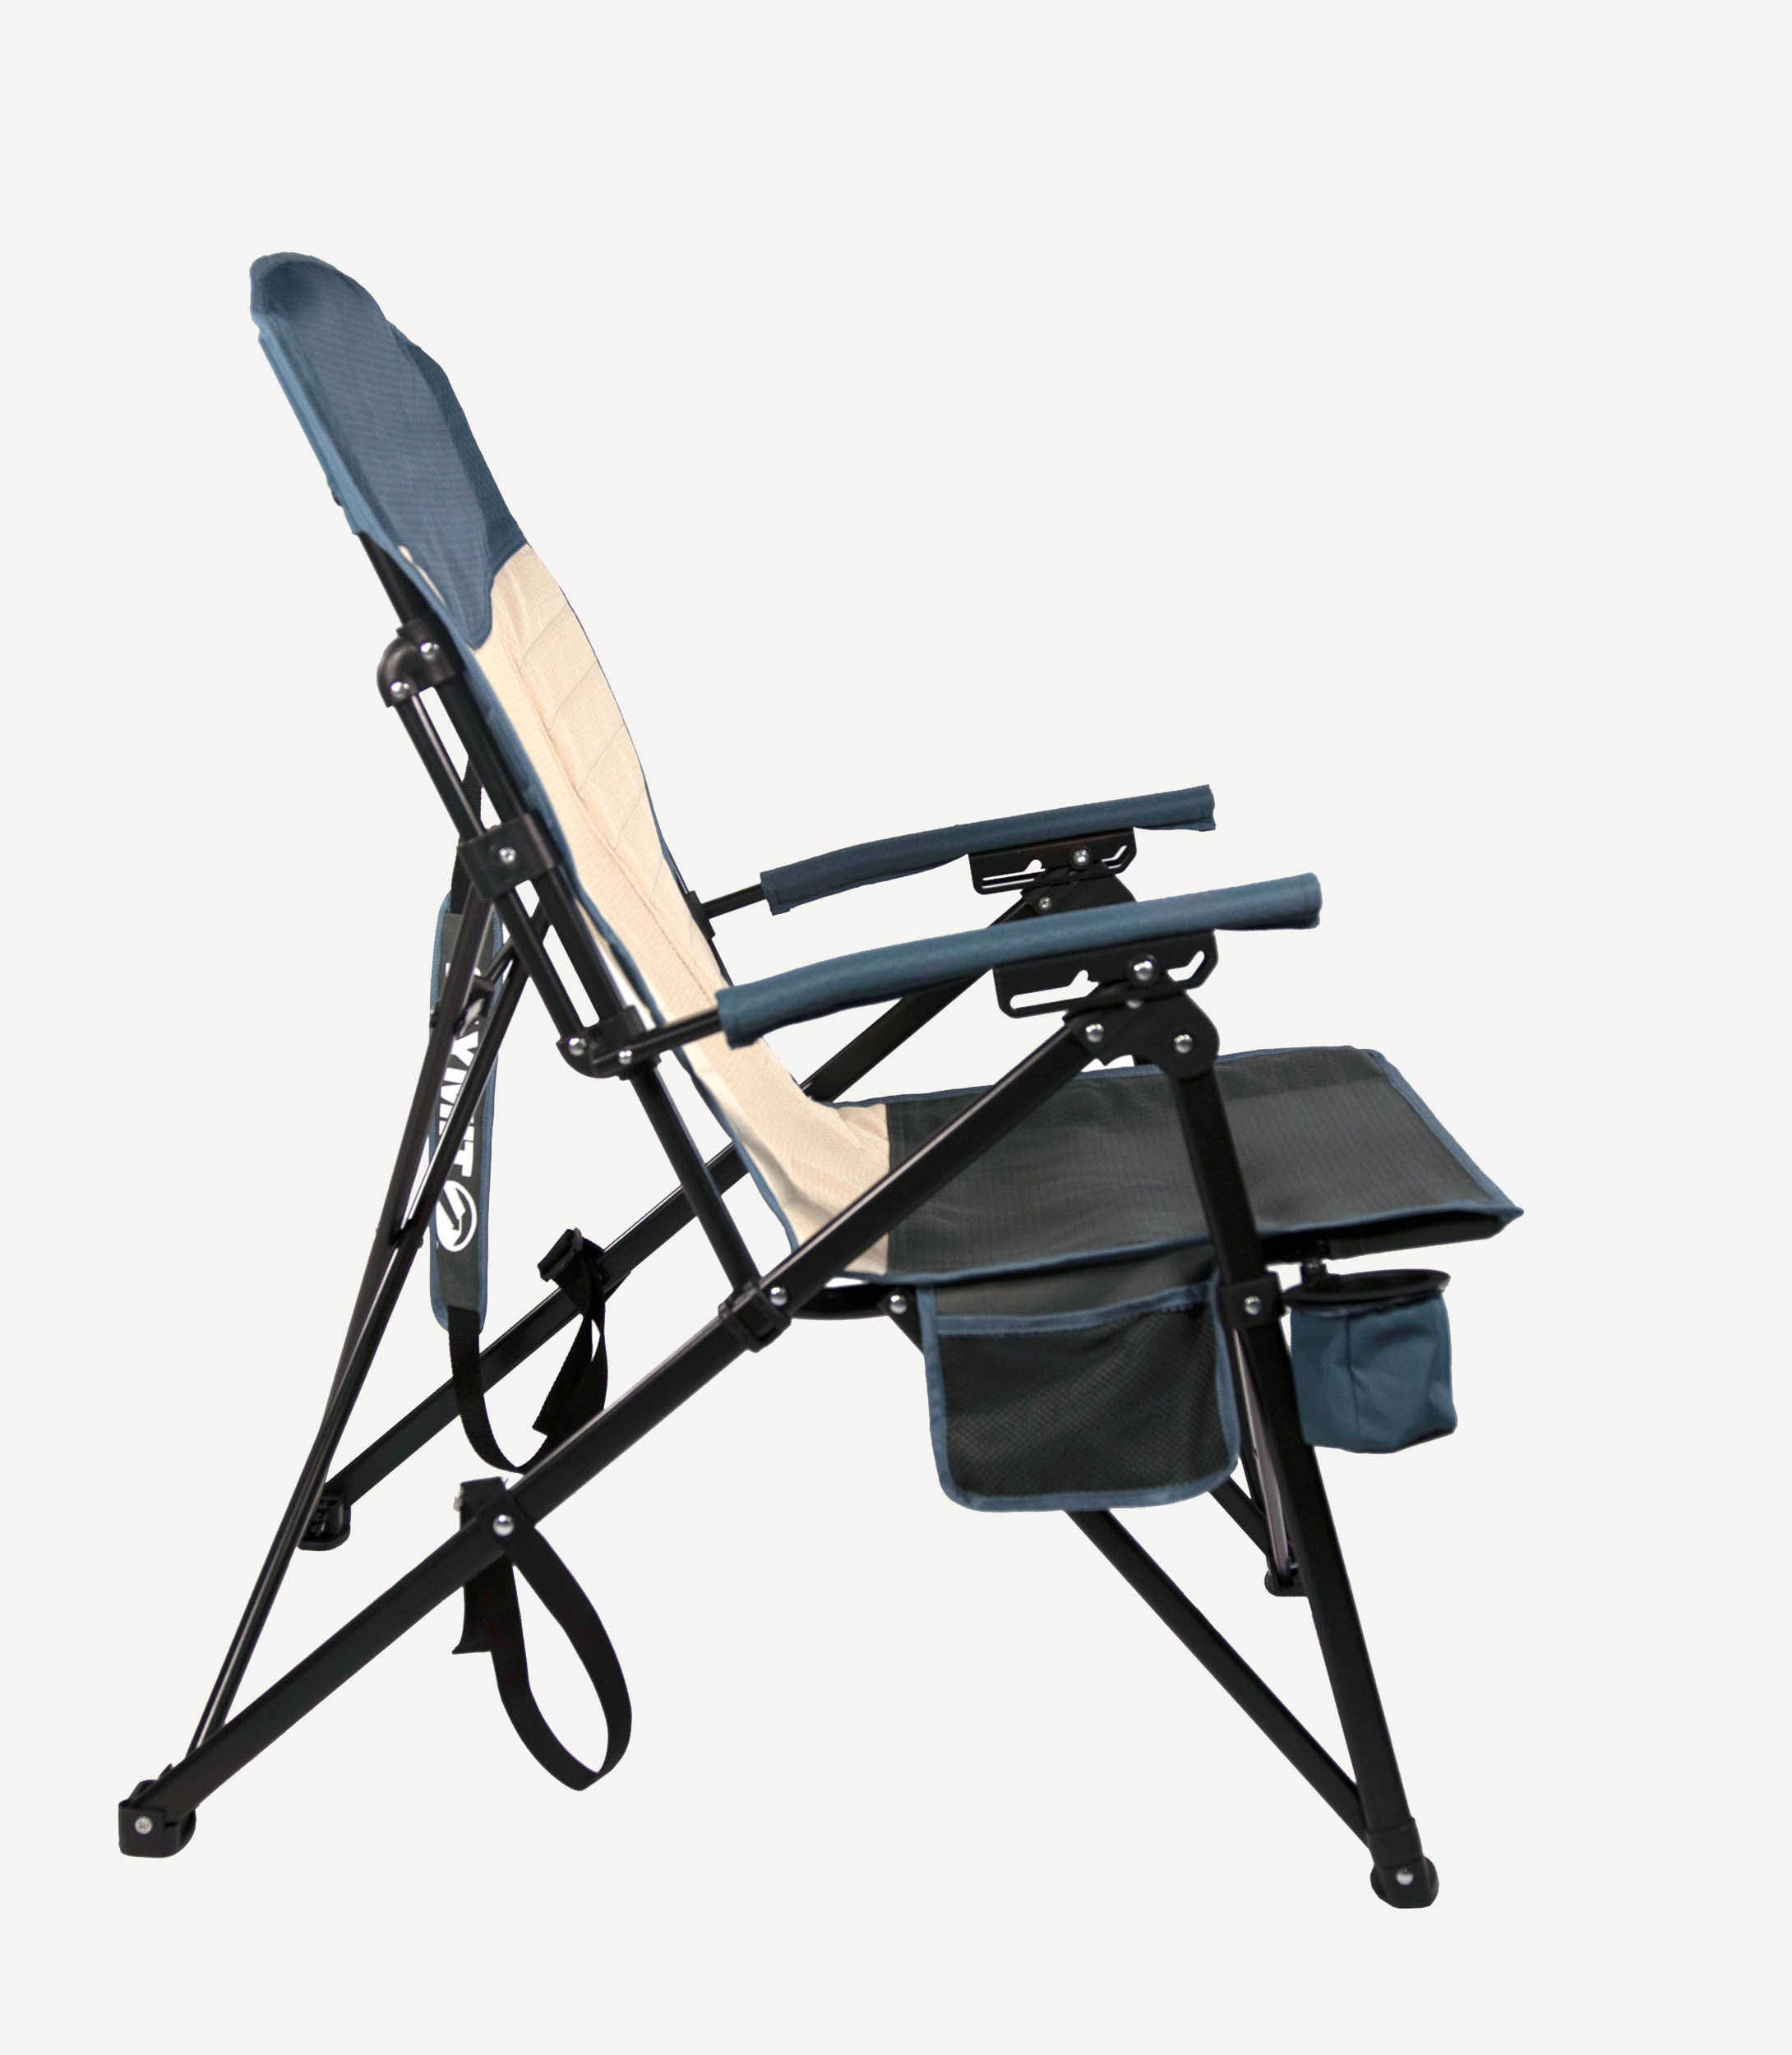 Chaise de chasse portable d'extérieur de nouveau style avec directeur de  table latérale Chaise de camping - Chine Chaise de camping, chaise de plage